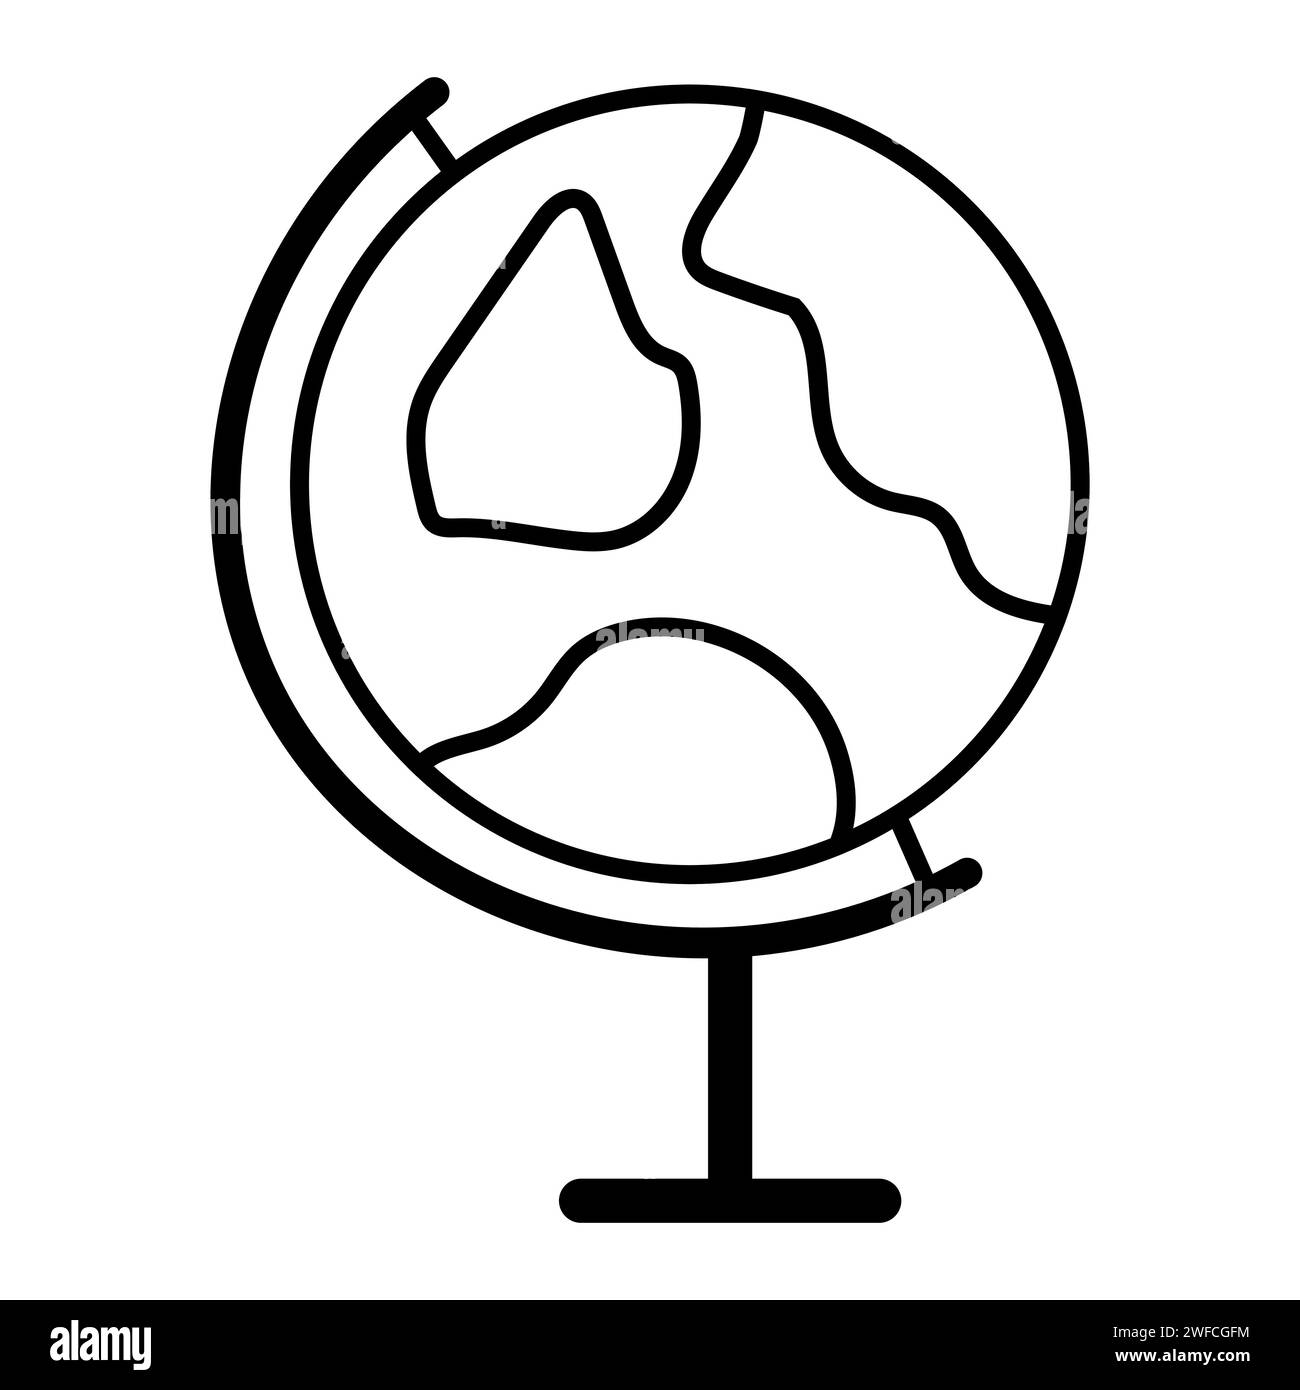 Globo scolastico bianco e nero. Pianeta Terra. Illustrazione vettoriale. immagine stock. EPS 10. Illustrazione Vettoriale